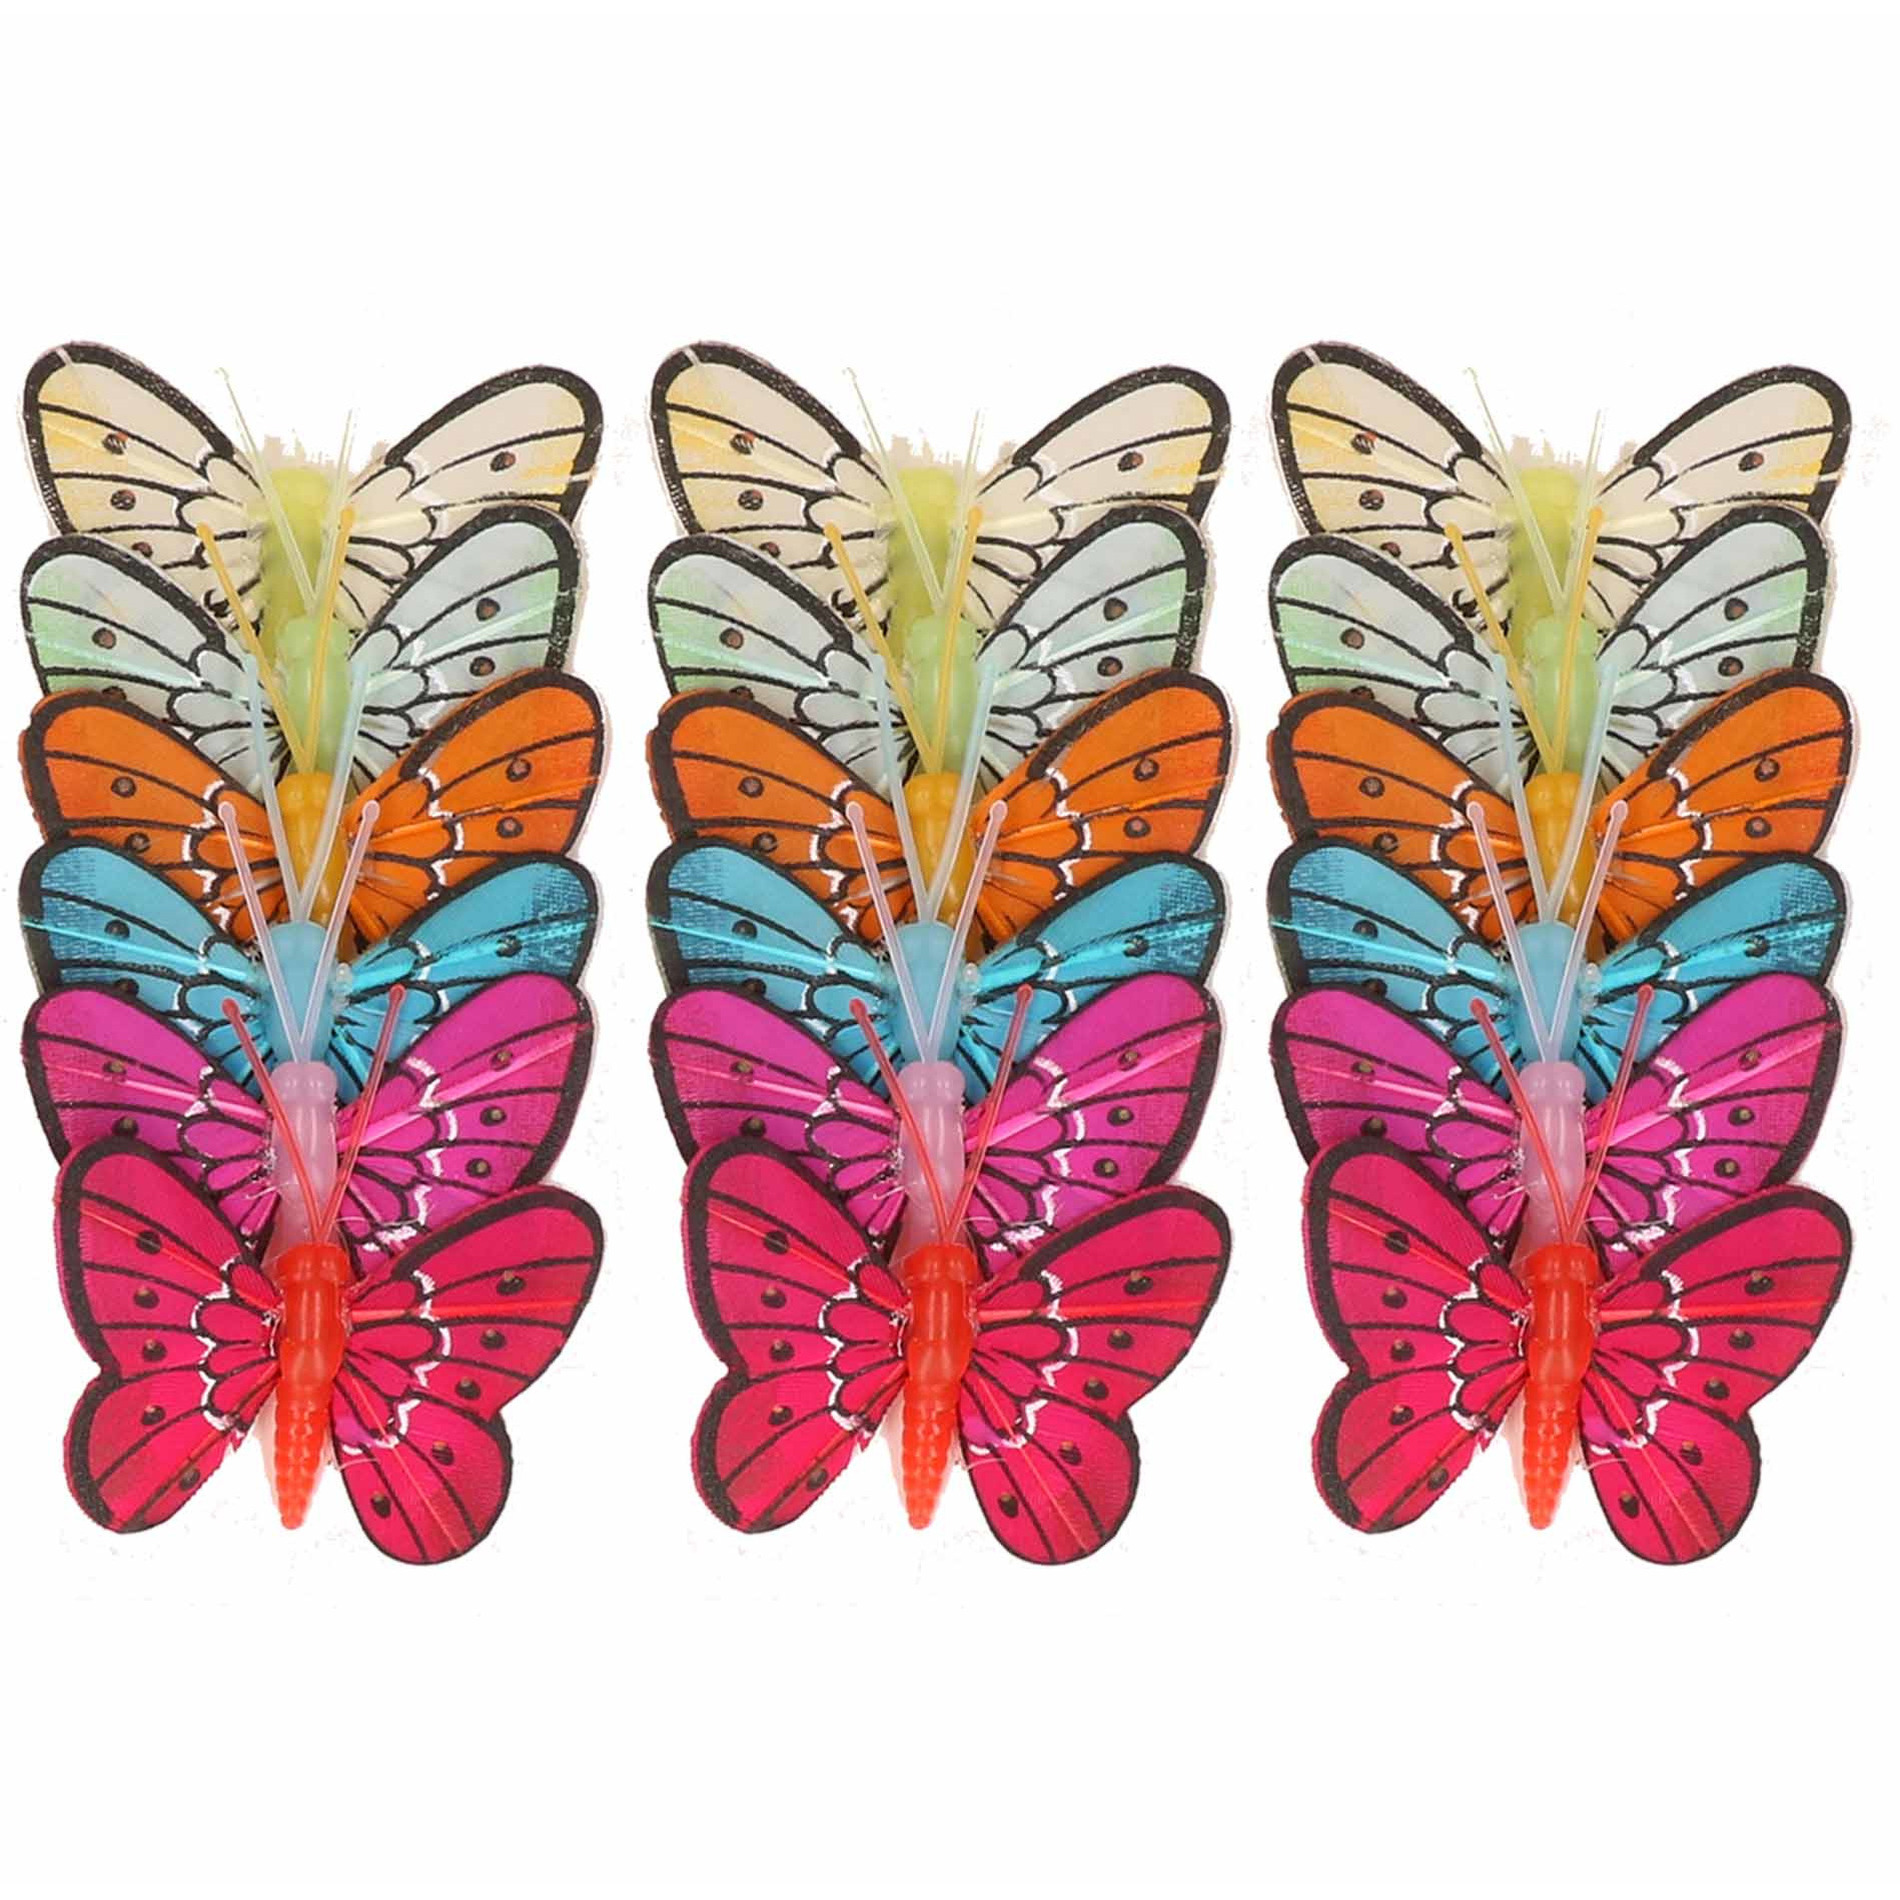 24x stuks Decoratie vlinders 5 cm op prikkers